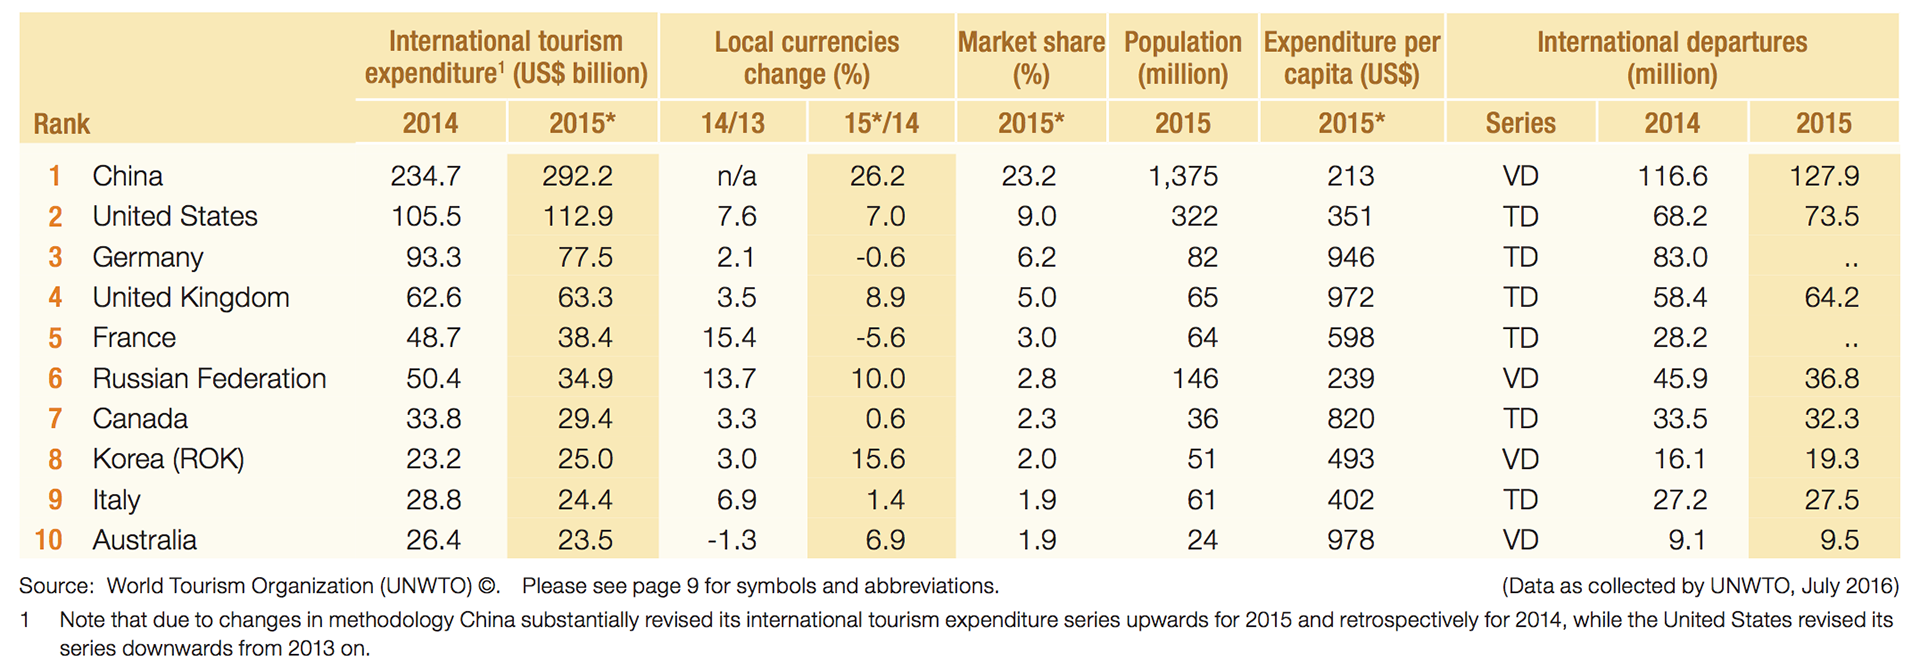 Udgiftsniveau inden for international turisme